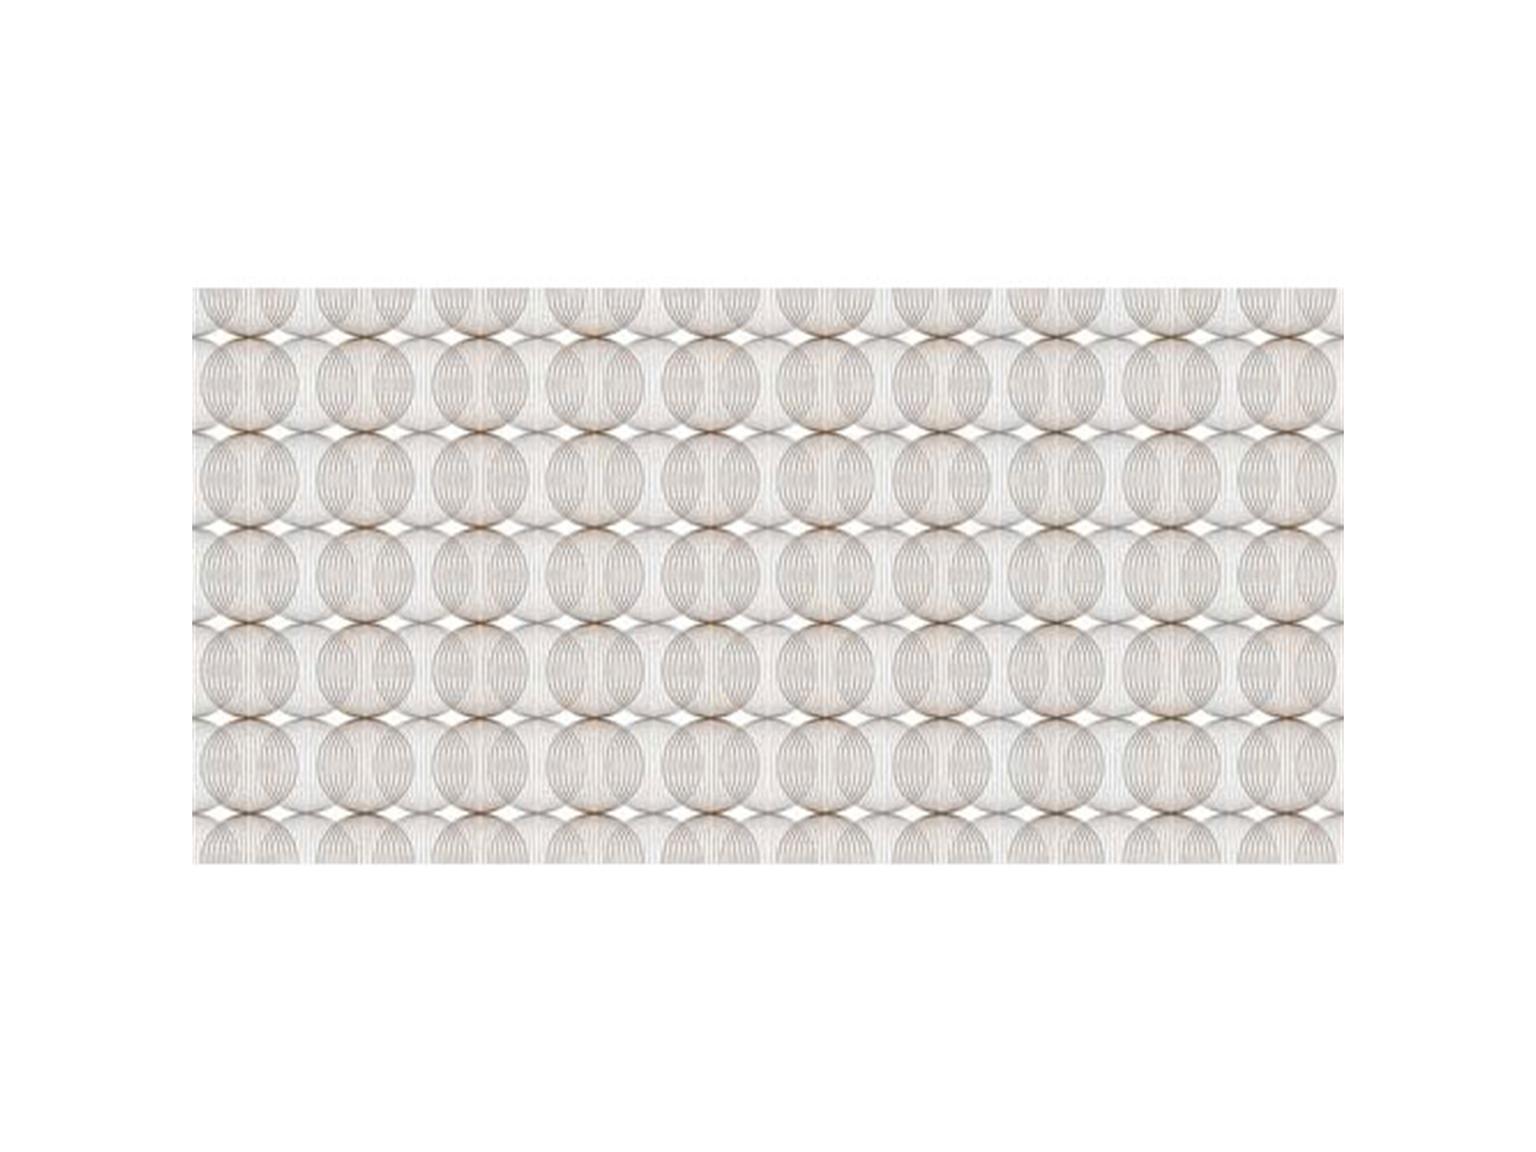 TISCHLAEUFER AIRLAID  40 cm x24 lfm, Ludo beige grey-braun